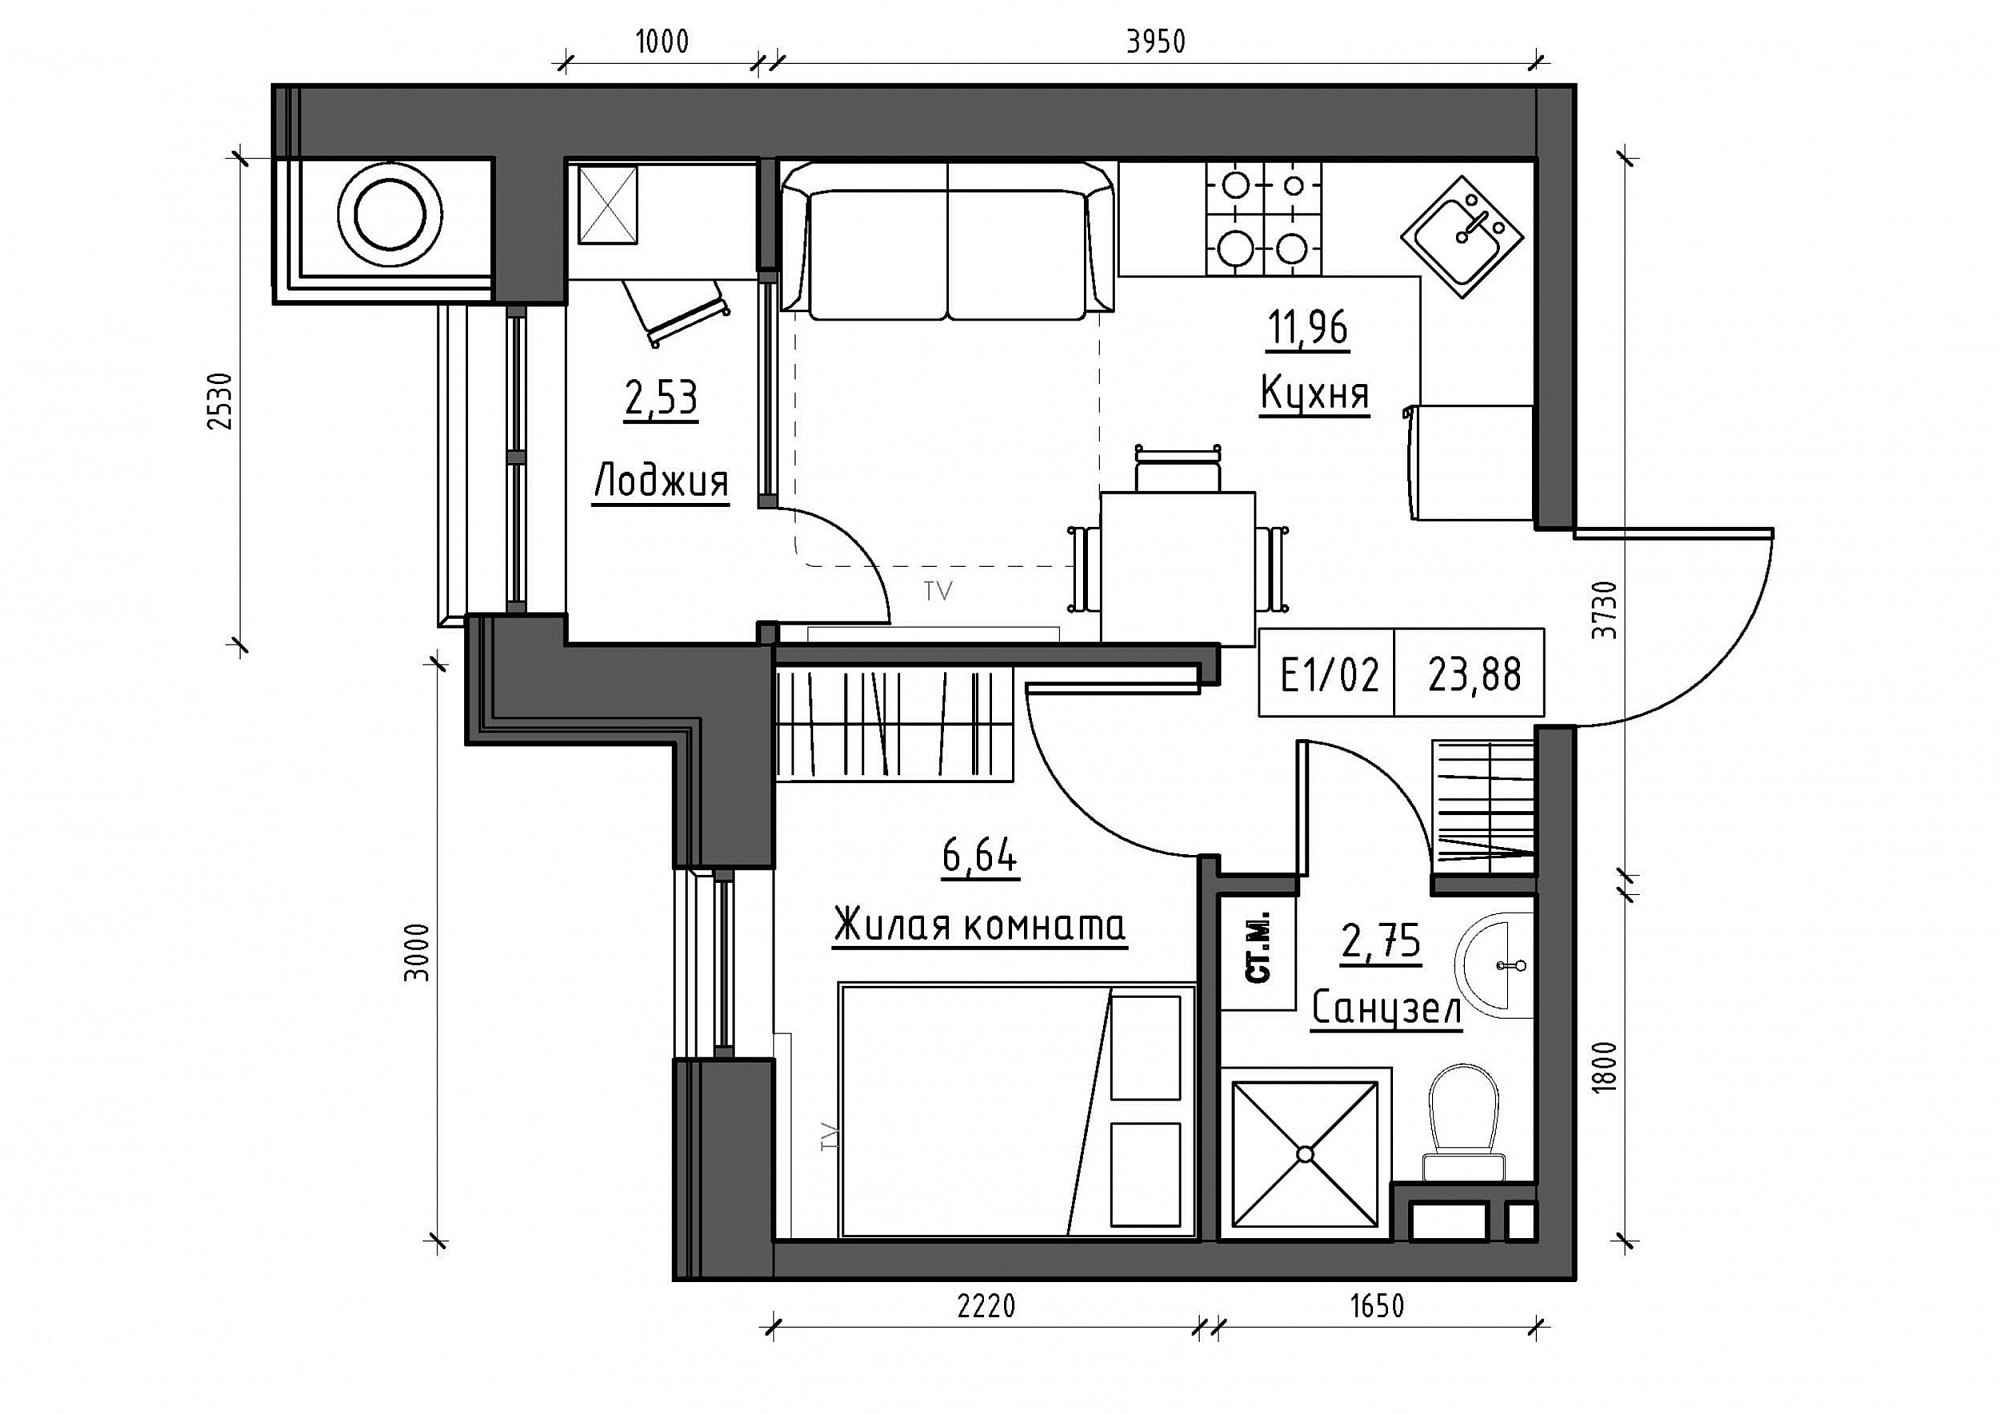 Планування 1-к квартира площею 23.88м2, KS-011-05/0001.